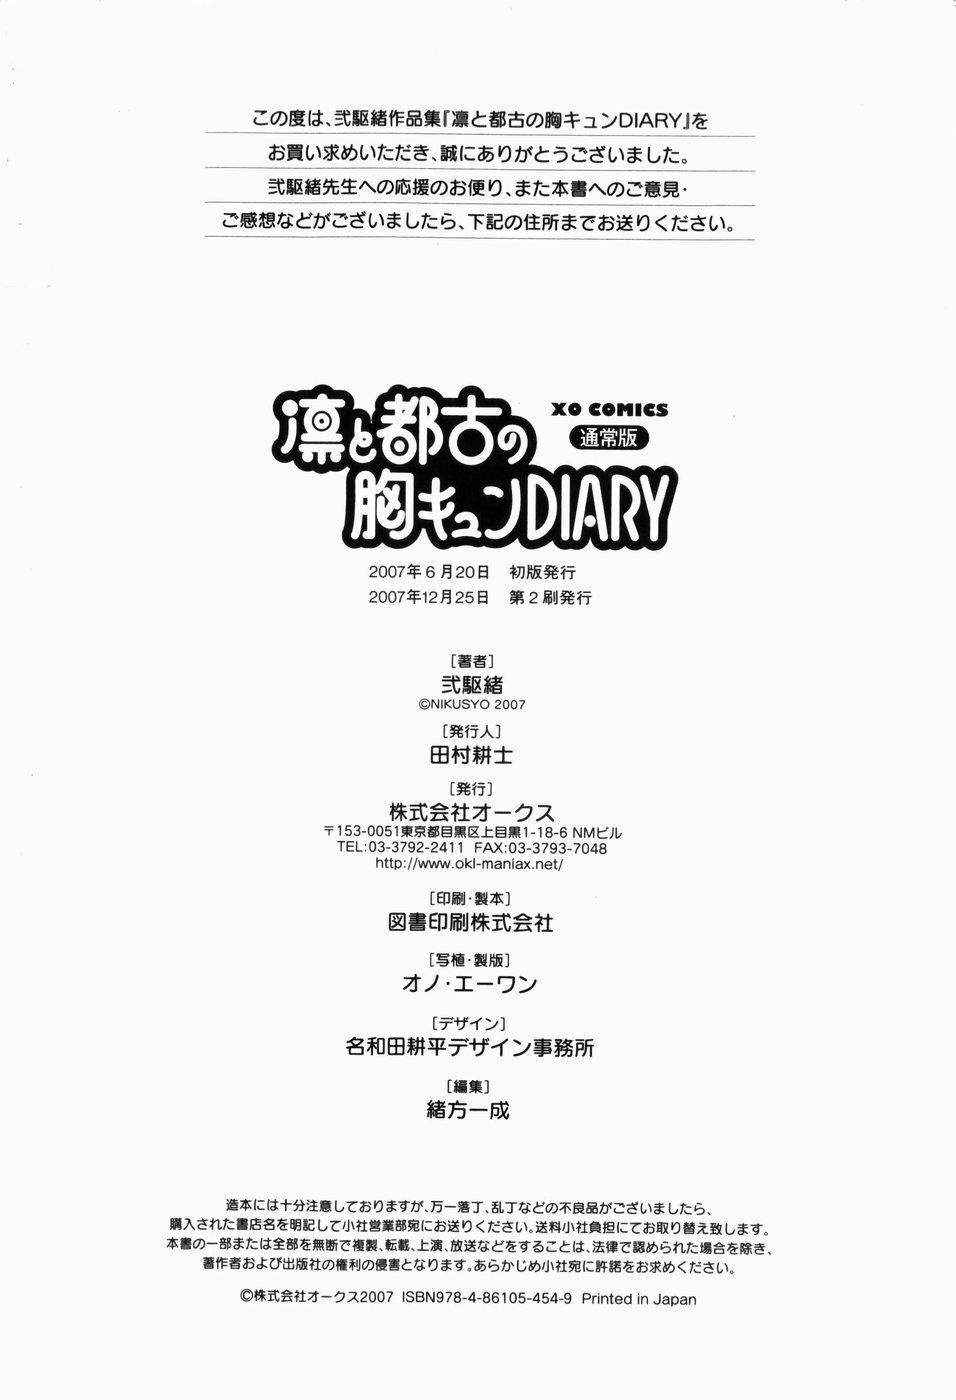 Rin to Miyako no Munekyun Diary 216